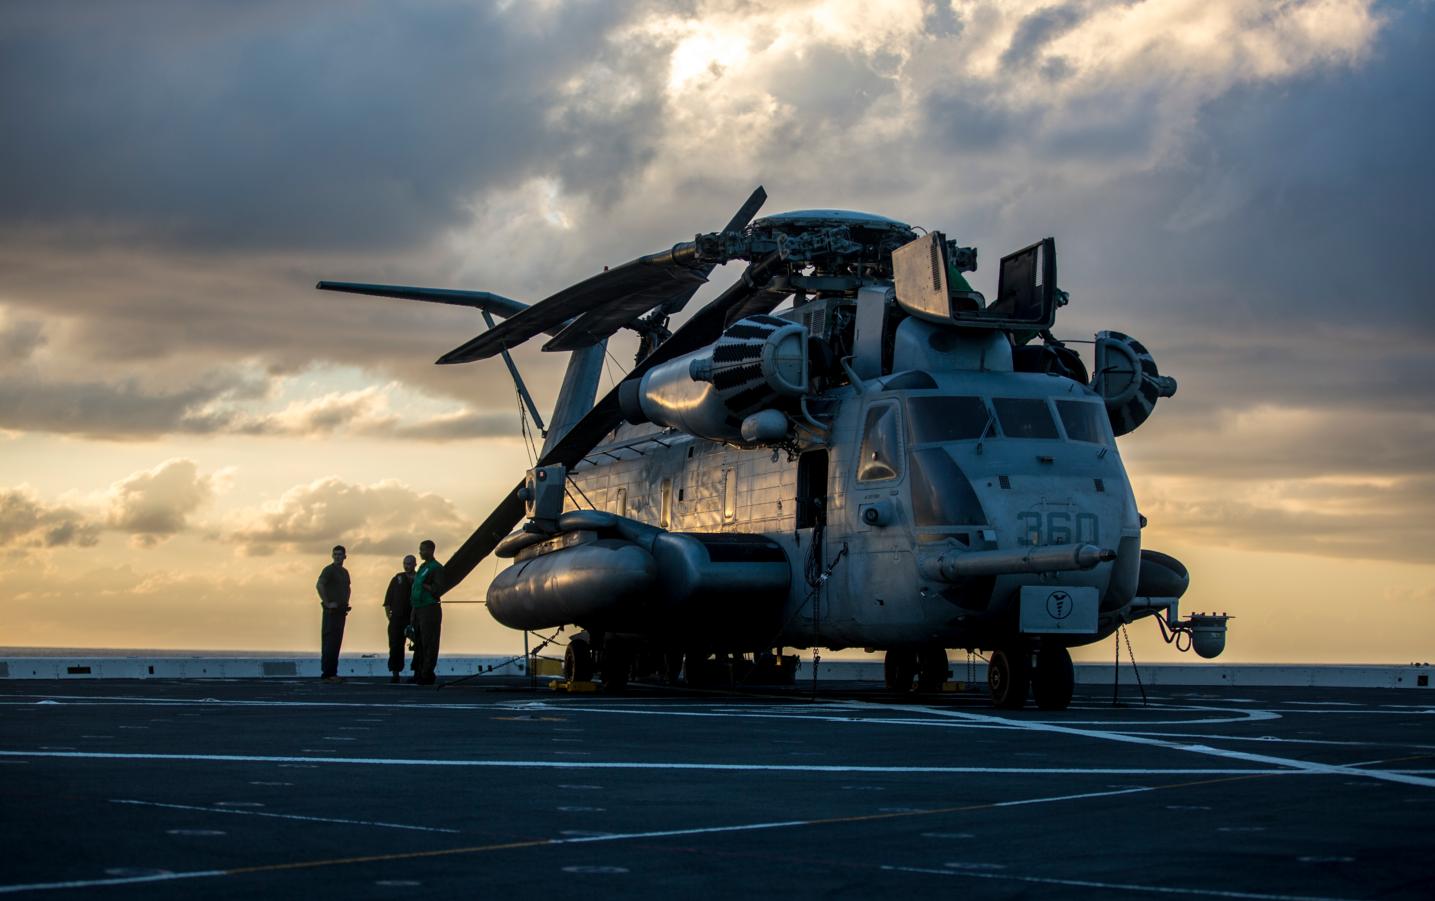 Вертолет CH-53E Super Stallion 462-й эскадрильи морских тяжелых вертолетов КМП США на летной палубе десантно-транспортного корабля USS Somerset, типа San Antonio, фото сделано 16 ноября 2018 года в Тихом океане